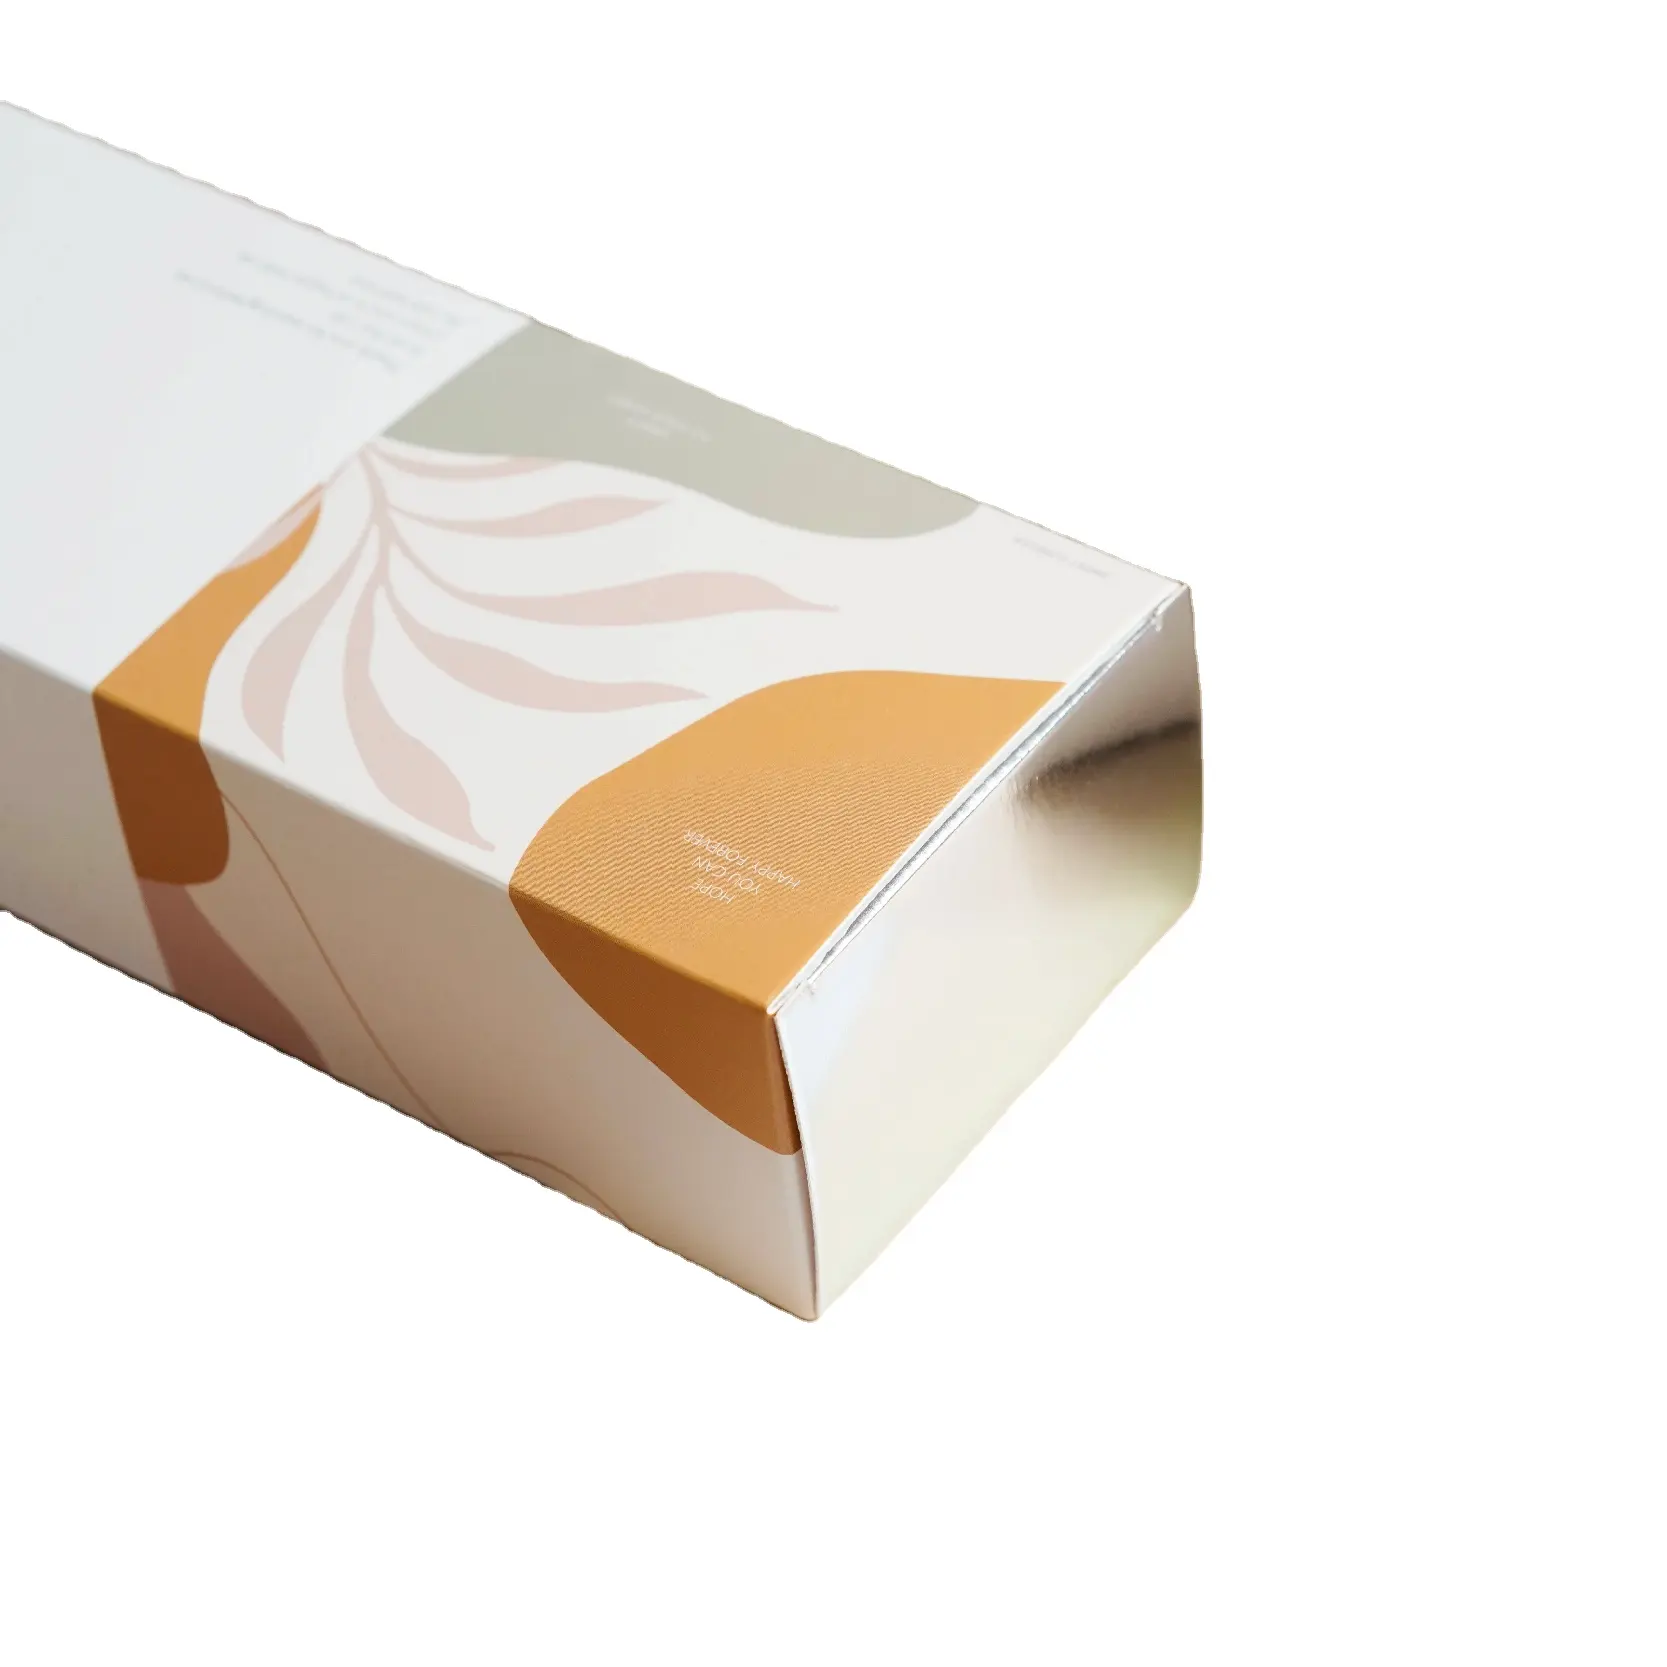 Luxus maßge schneiderte Pappe biologisch abbaubare Lebensmittel qualität Keks kuchen Box Tragbare Macaron Snack Box Lebensmittel verpackung